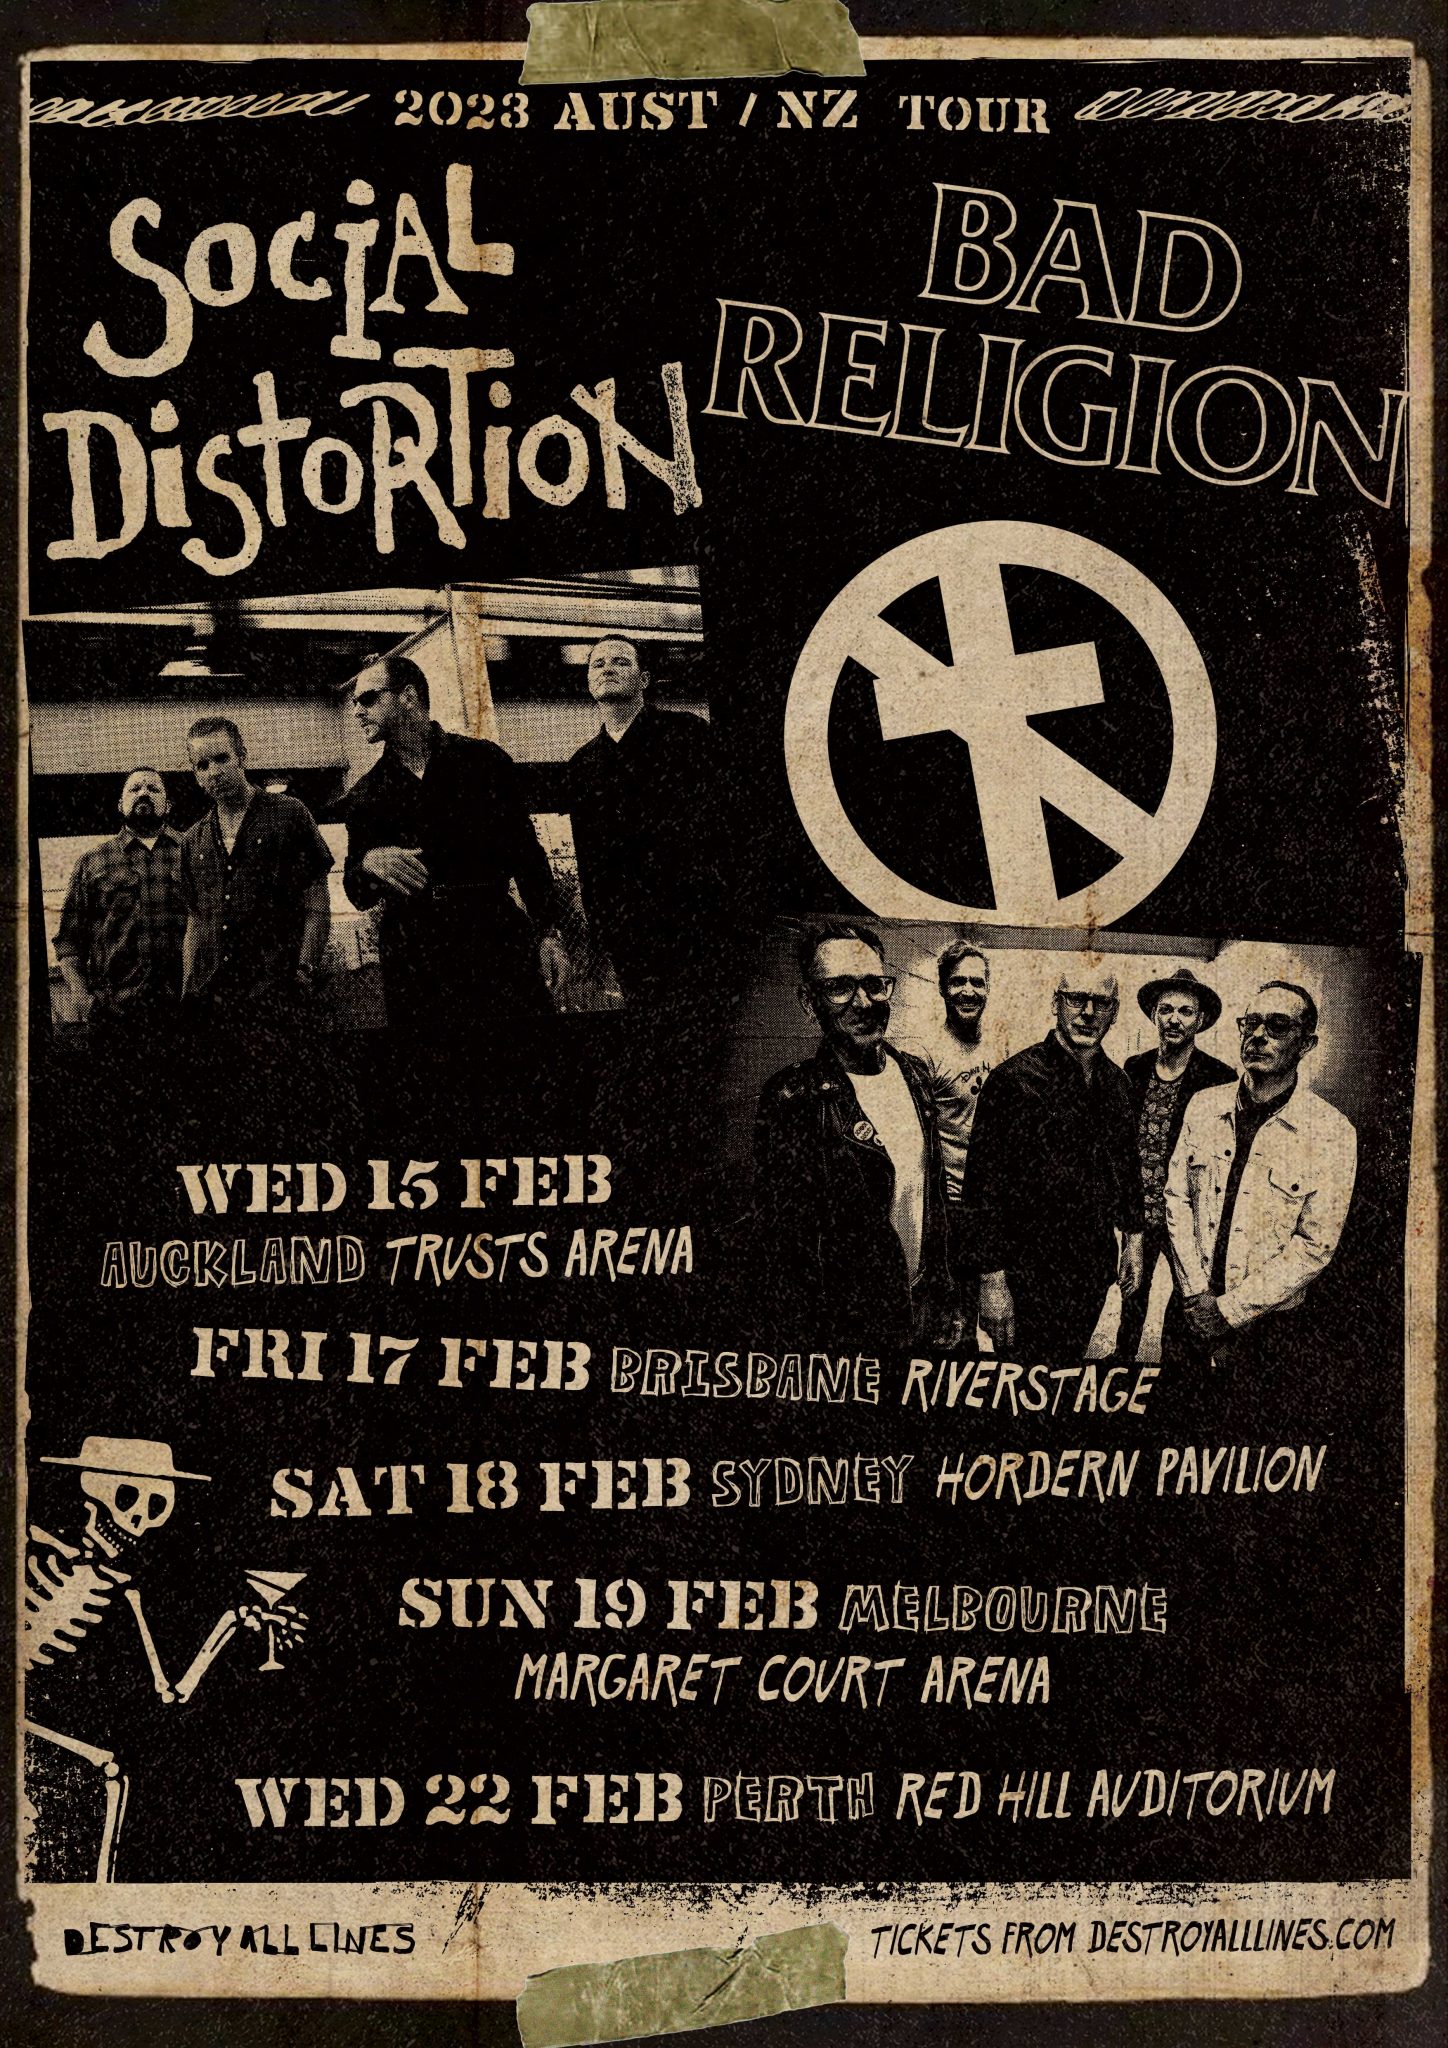 social distortion bad religion australia tour